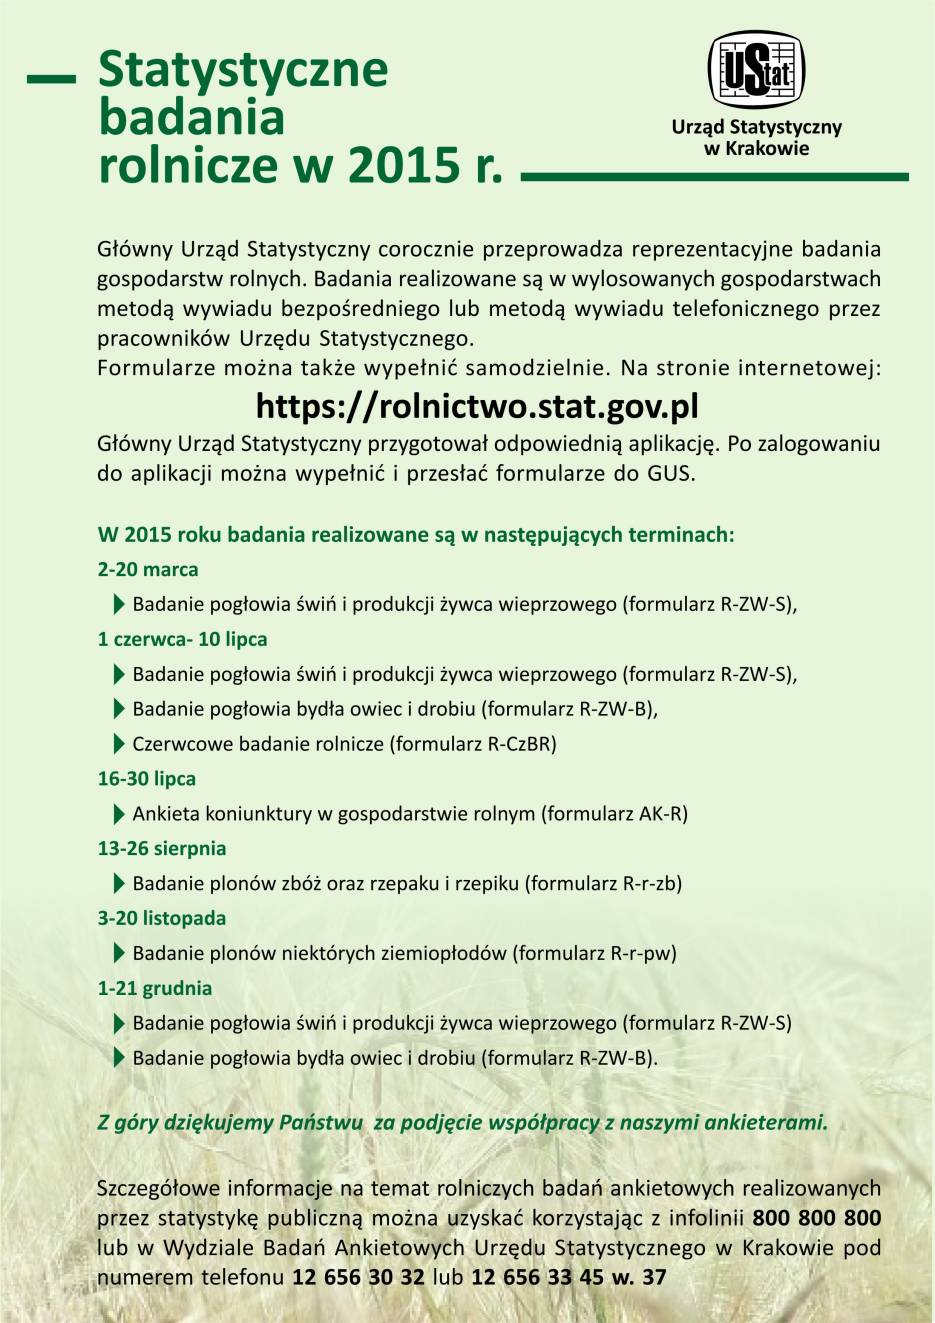 Statystyczne Badanie Rolnicze w 2015 r.